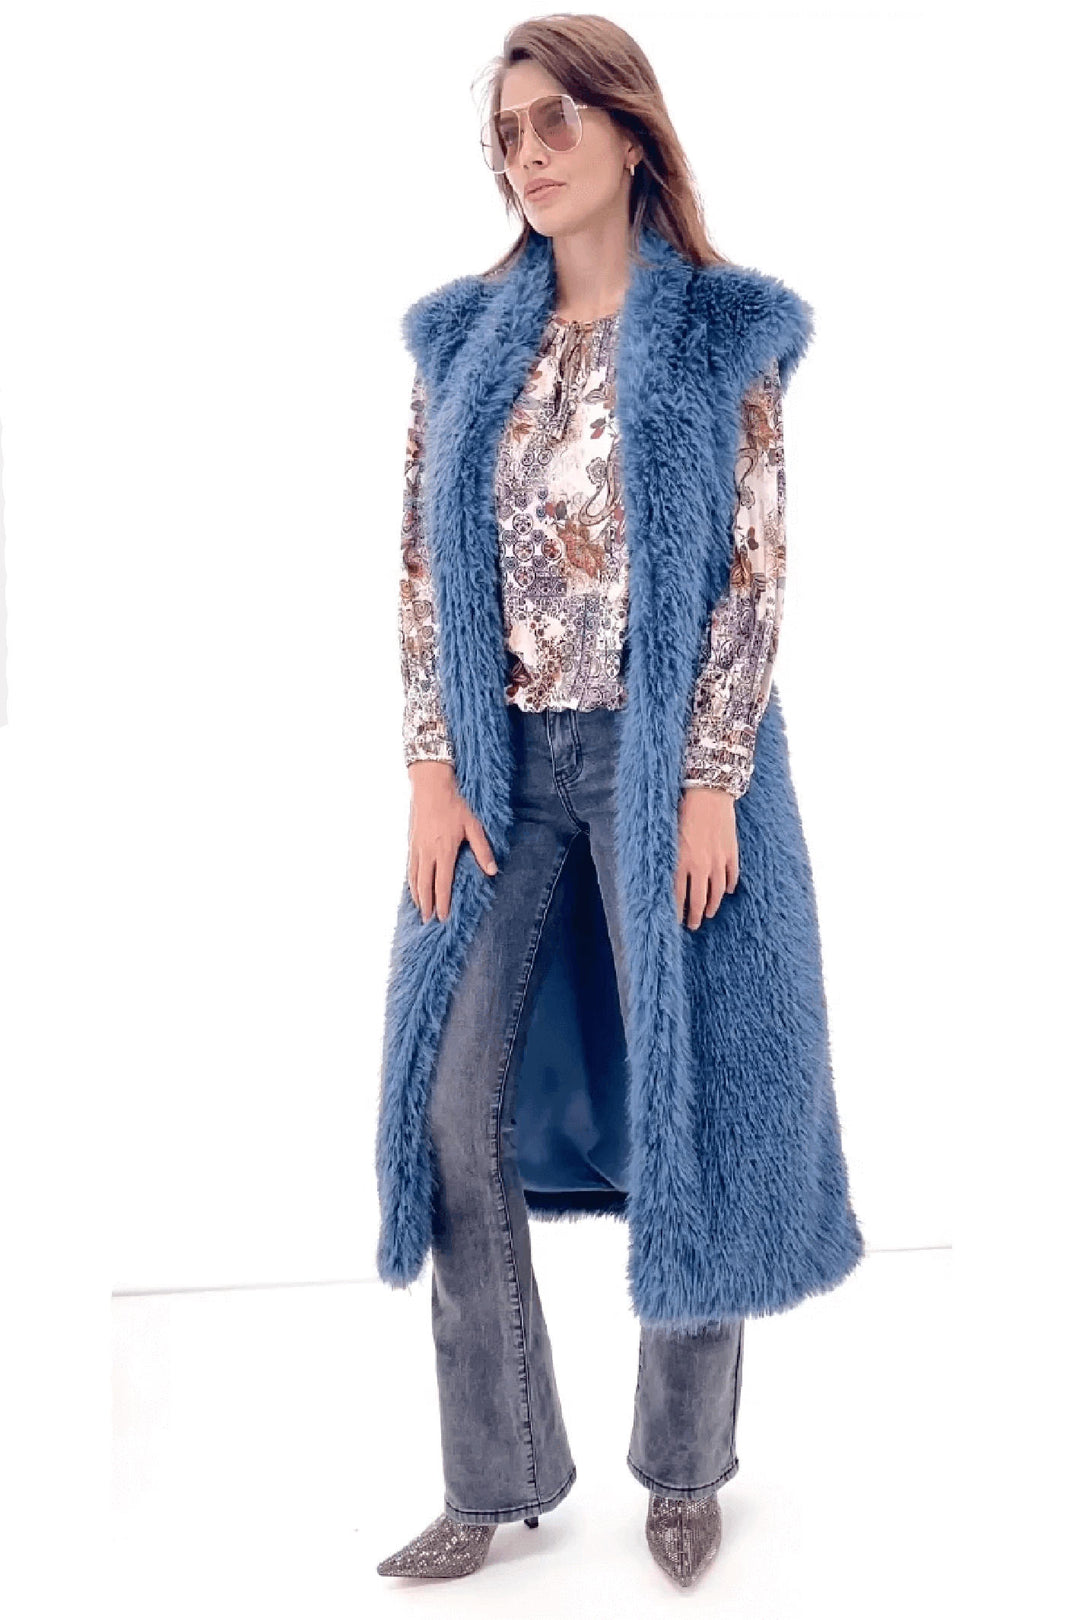 K Design X907 China Blue Faux Fur Longline Gilet - Experience Boutique